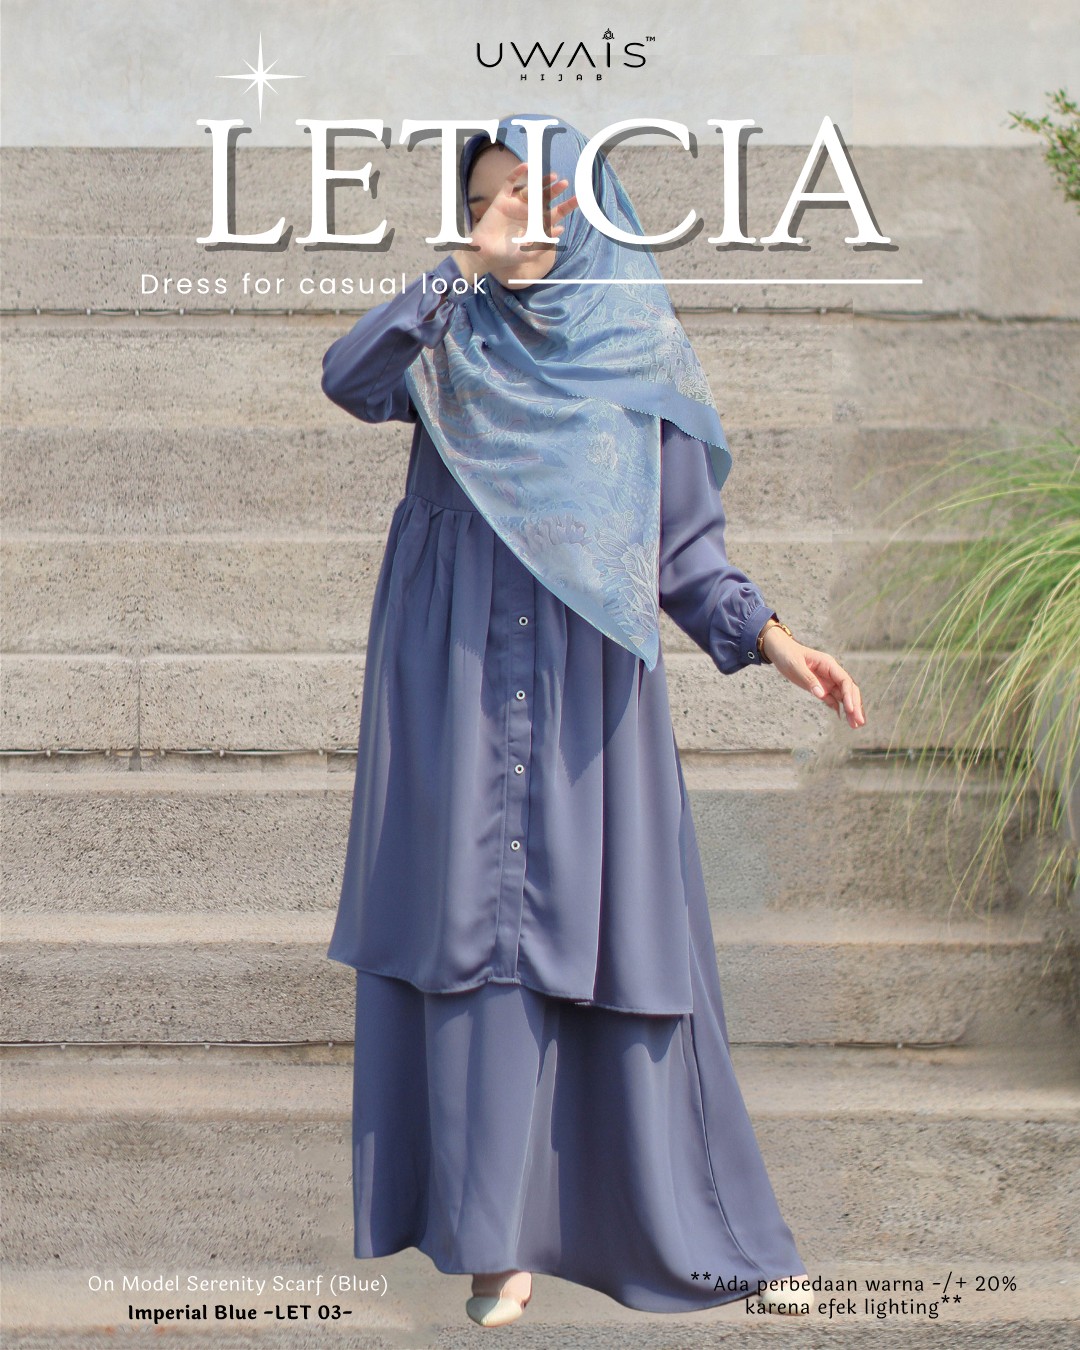 Katalog Leticia & Leanor (1)_9